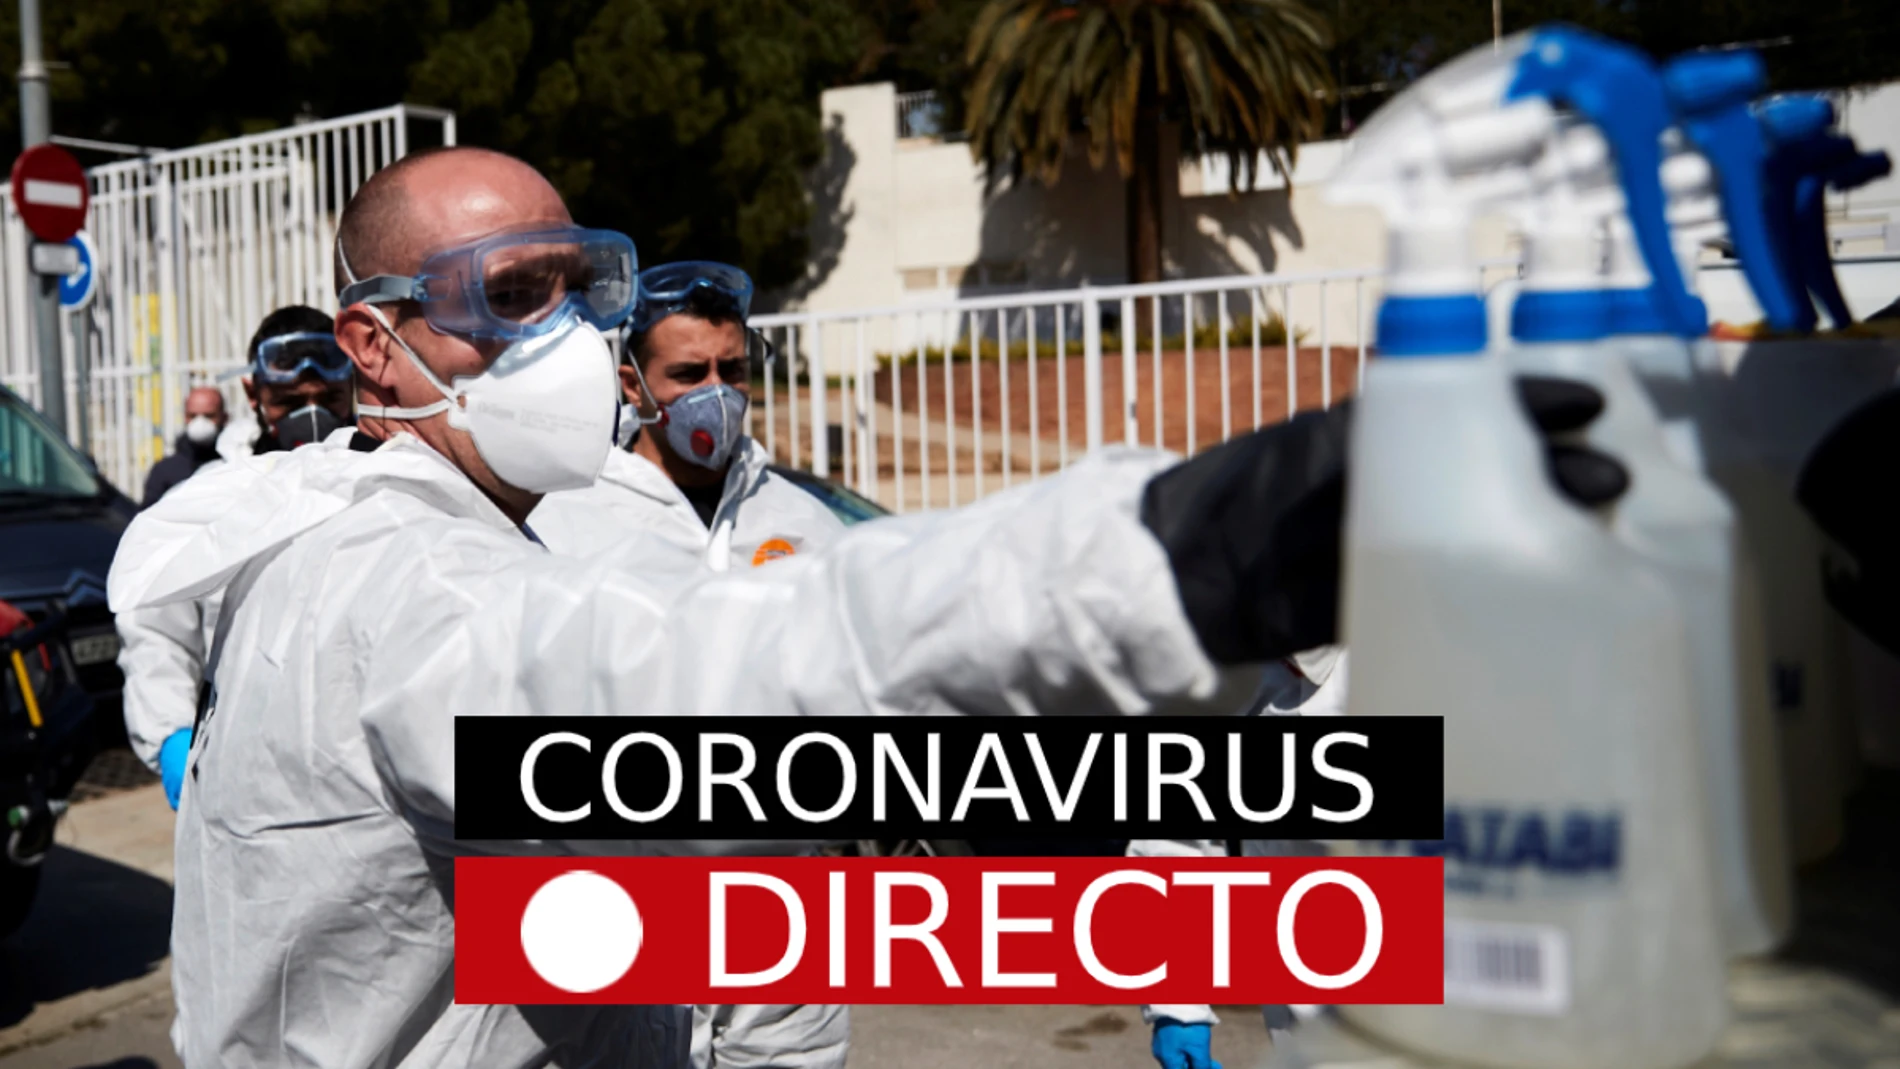 Coronavirus España: Datos y nuevos casos, noticias de última hora en directo